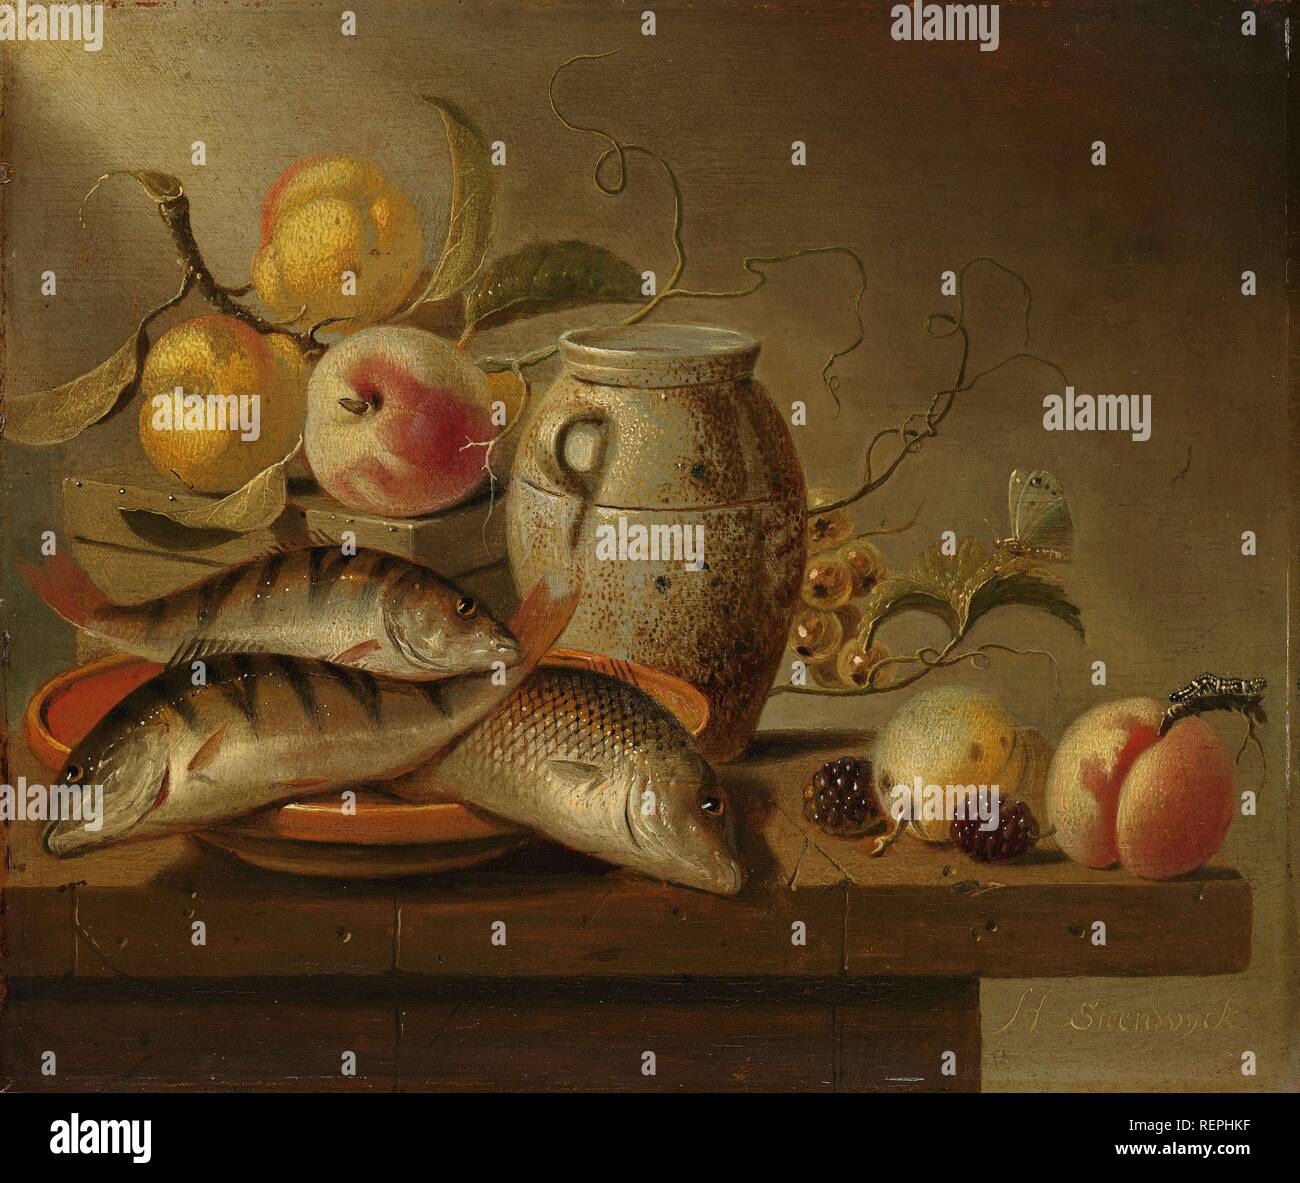 Nature morte avec Jarre, poissons et fruits. Dating : 1652. Dimensions : H 23 cm × w 27 cm ; d 5,5 cm. Musée : Rijksmuseum, Amsterdam. Auteur : Harmen Steenwijck. Banque D'Images